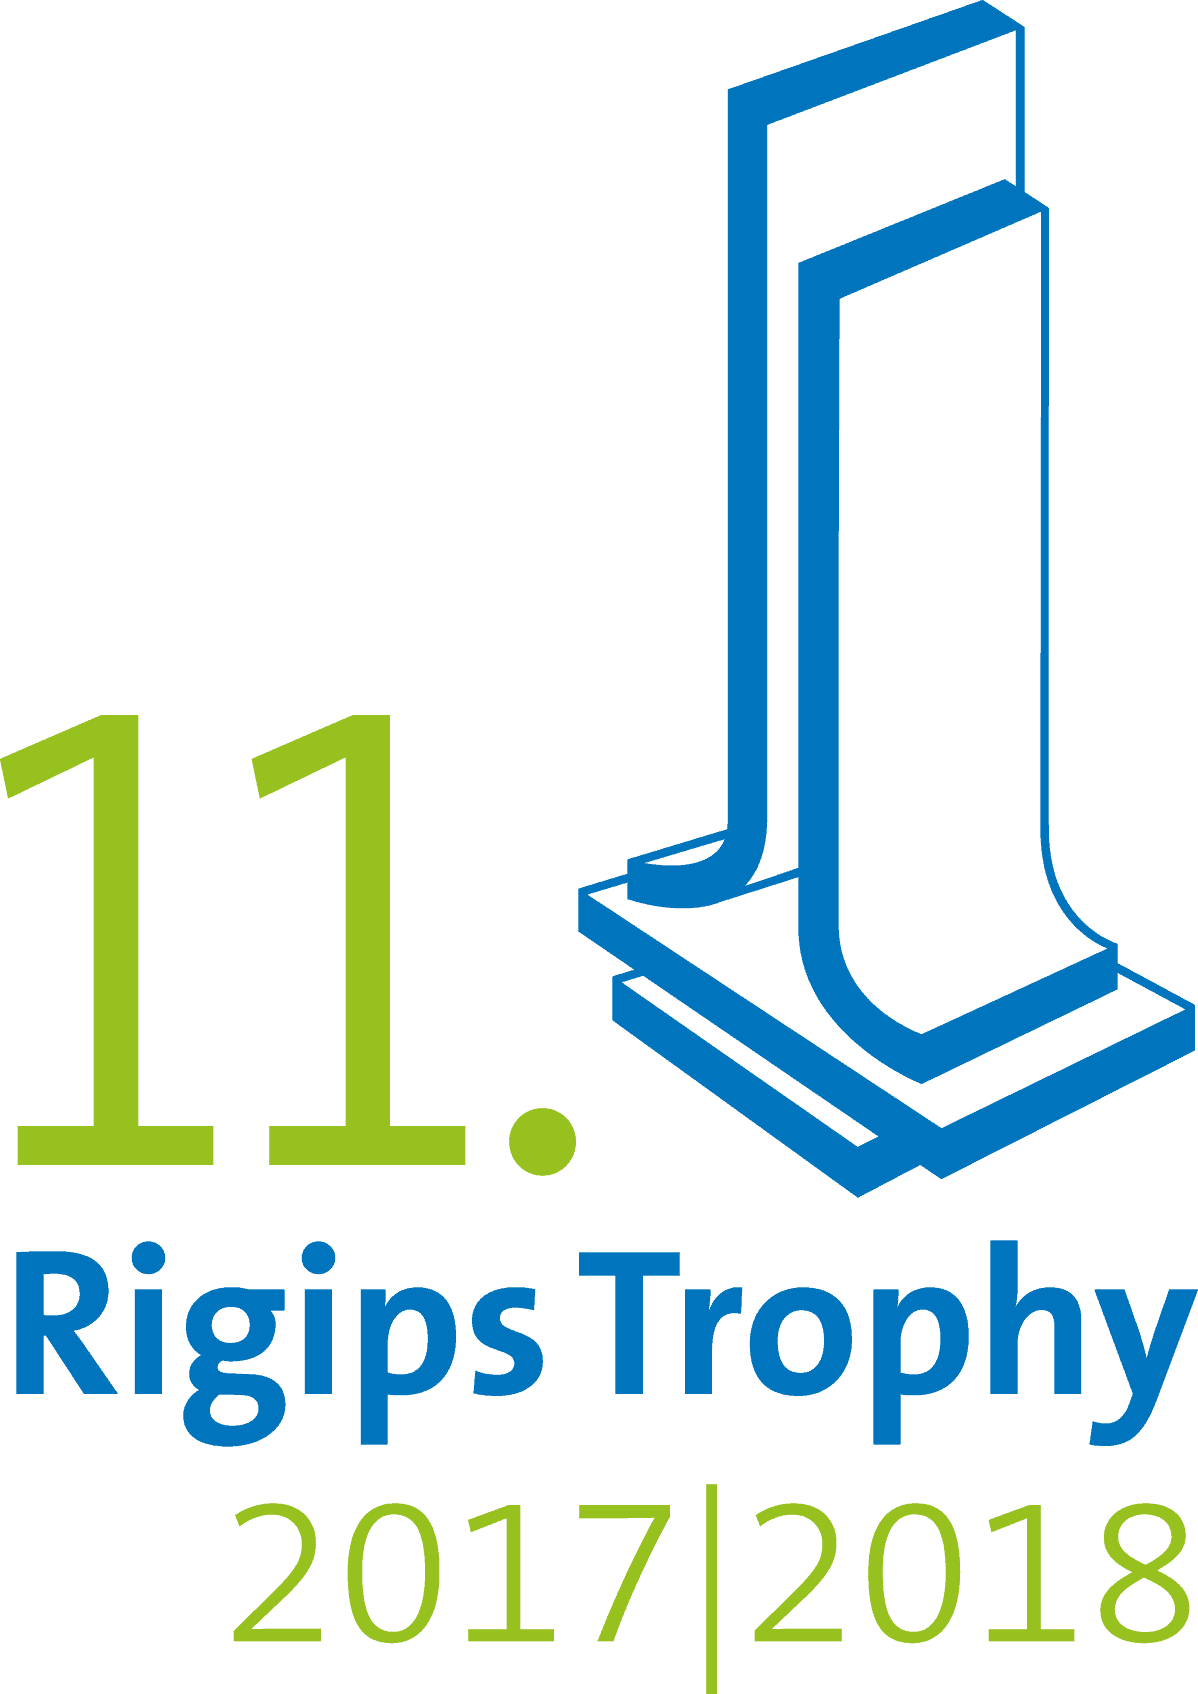 Teilnahme an der 11. Rigips Trophy 2017 / 2018